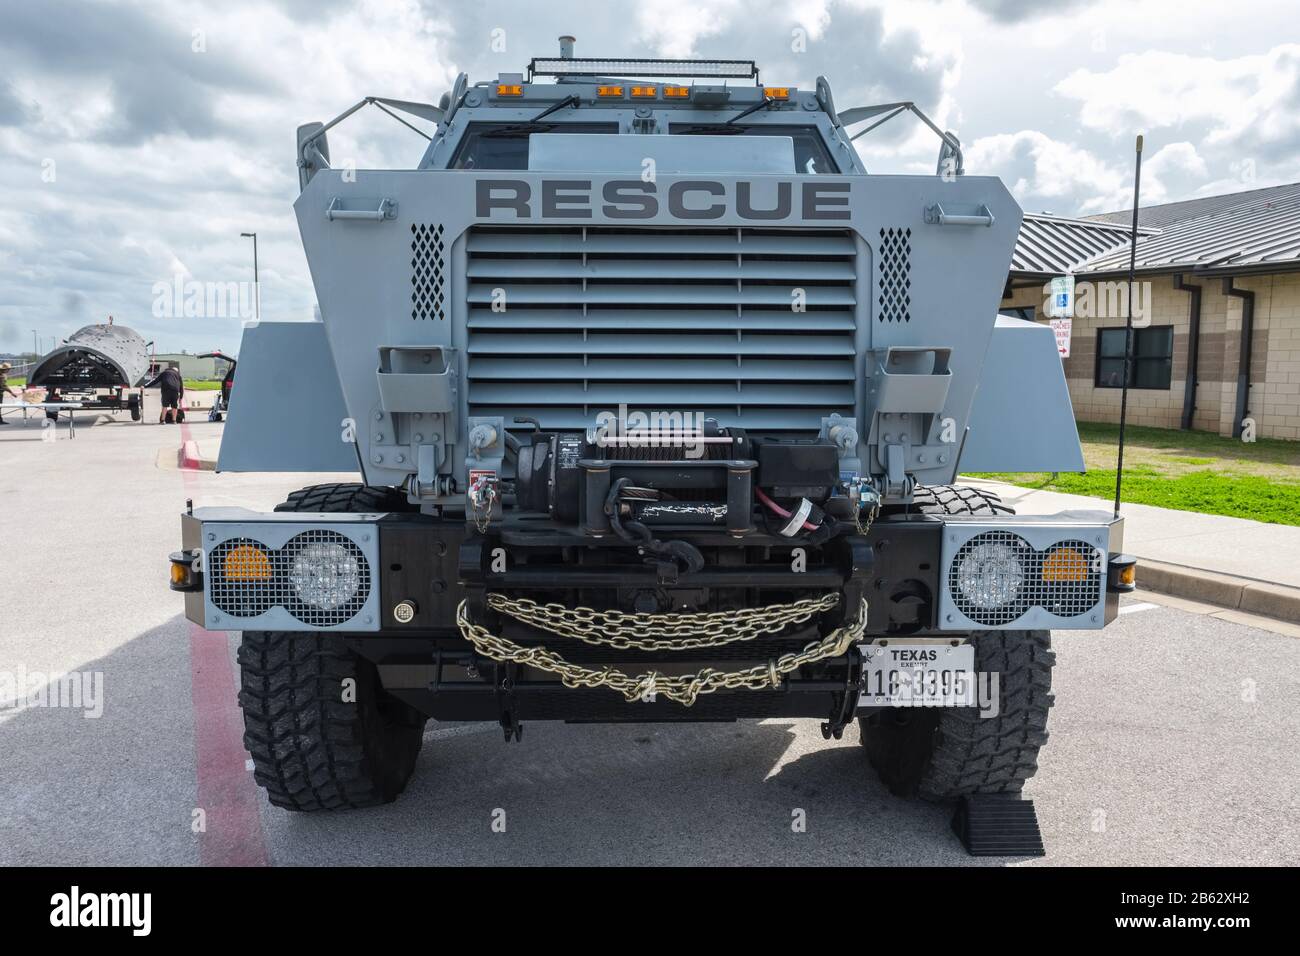 Vorderansicht des ehemaligen militärischen MRAP-Hinterhalt-Geschützten Fahrzeugs, das von der örtlichen Polizeibehörde als Rettungsfahrzeug verwendet wird Stockfoto